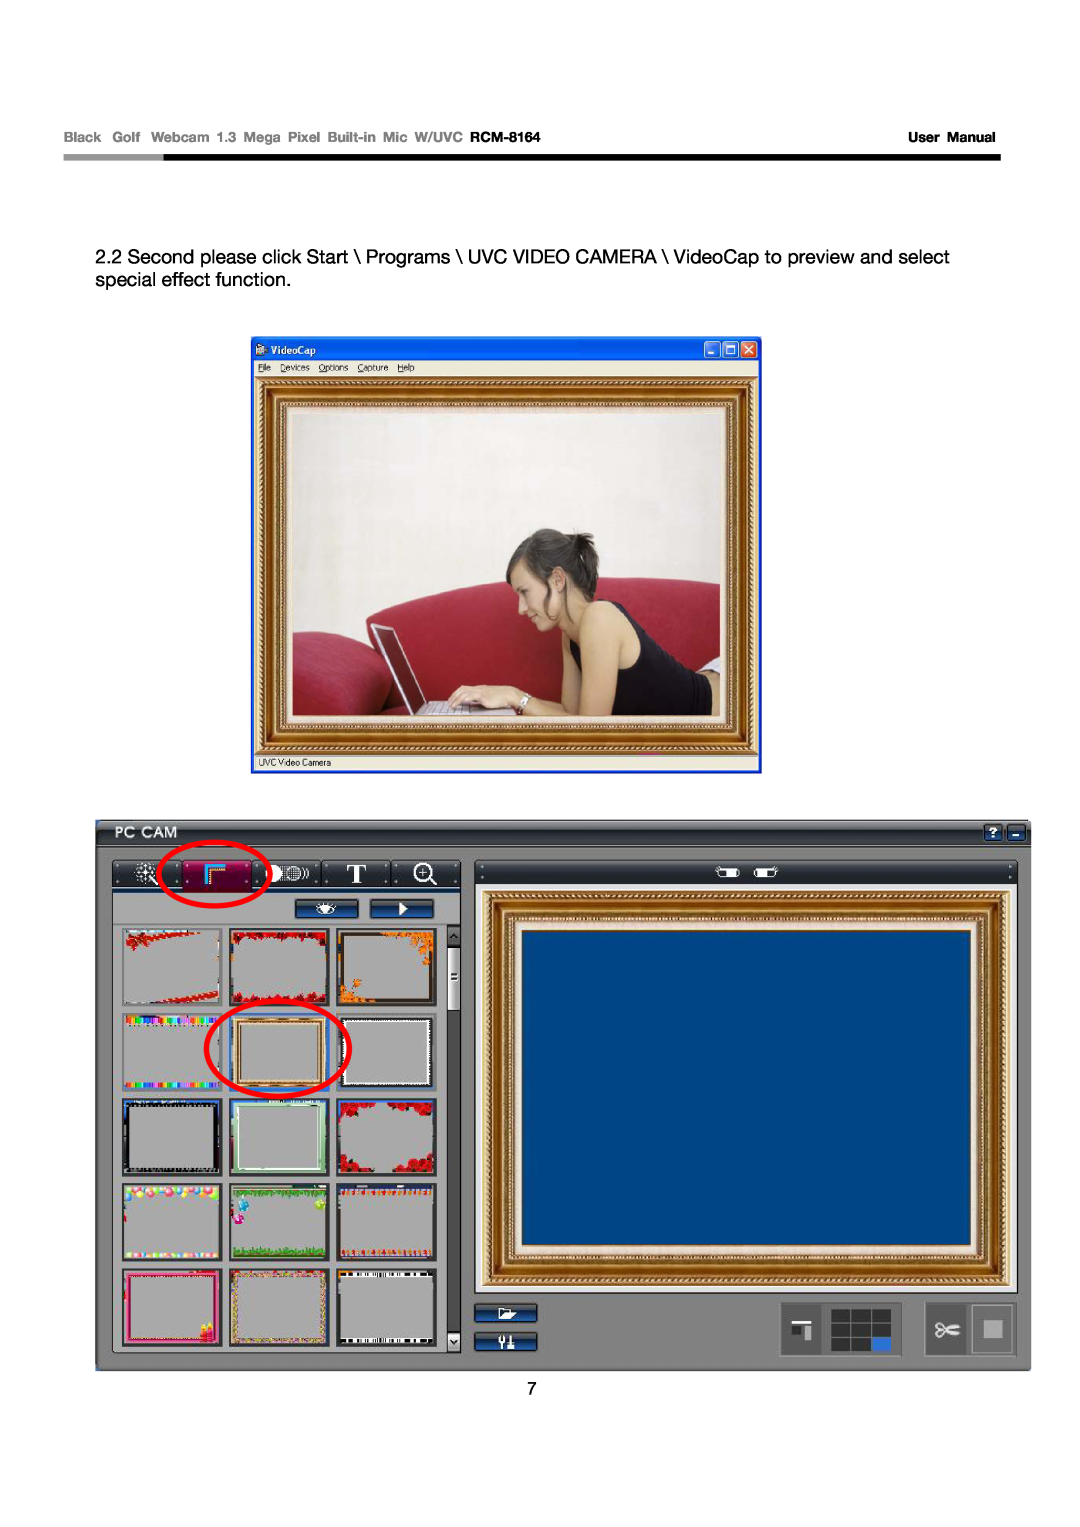 Rosewill user manual Black Golf Webcam 1.3 Mega Pixel Built-in Mic W/UVC RCM-8164, User Manual 